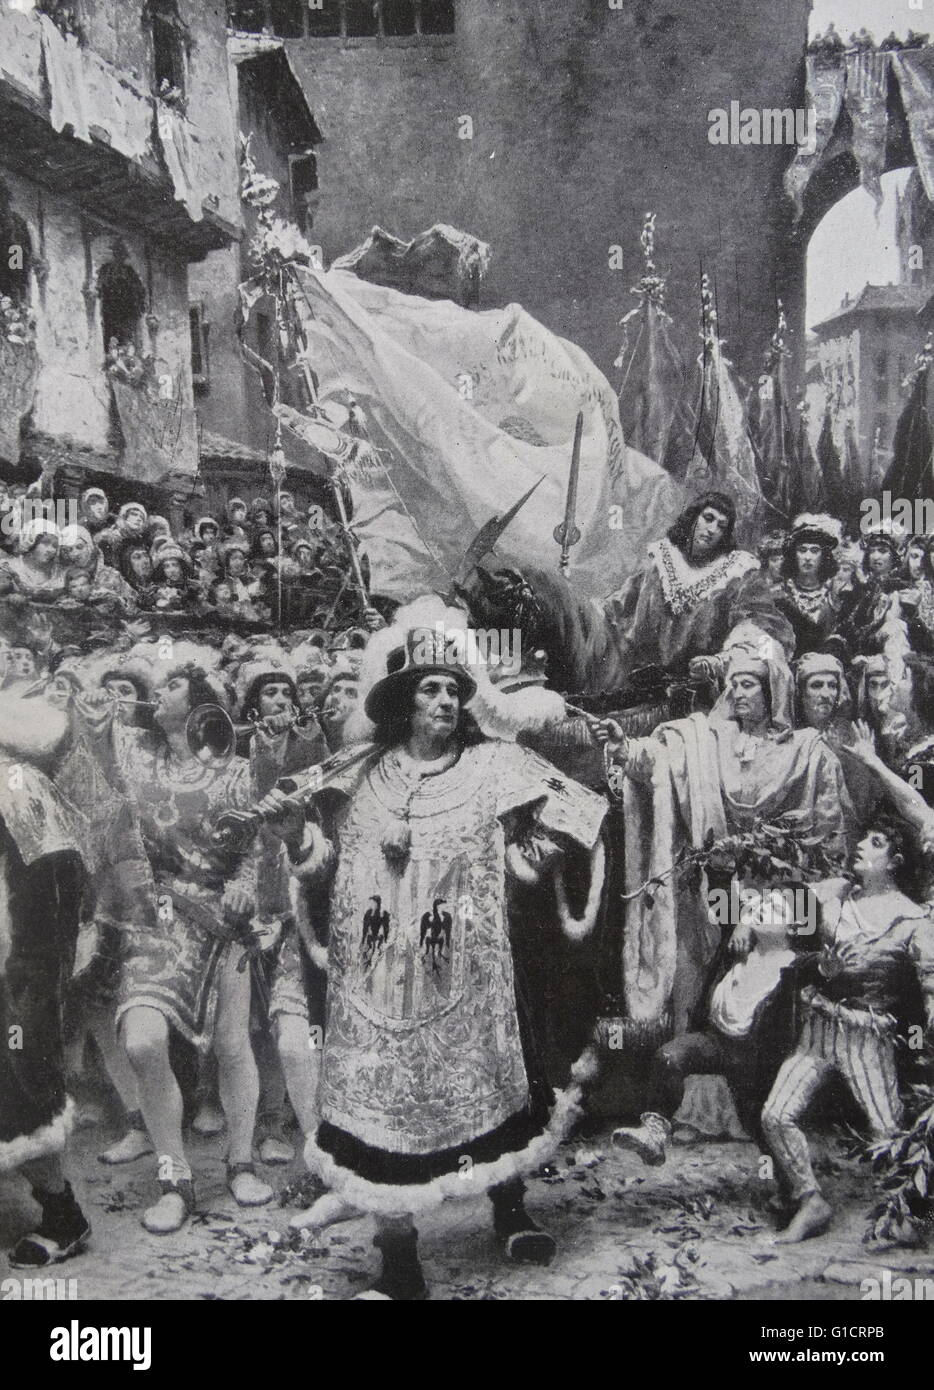 Malerei der Darstellung des Einganges des Prinzen von Vianna in Barcelona von Ramon Tusquets Maignon (1837-1904) Italienisch-spanischen Maler. Vom Jahre 1885 Stockfoto